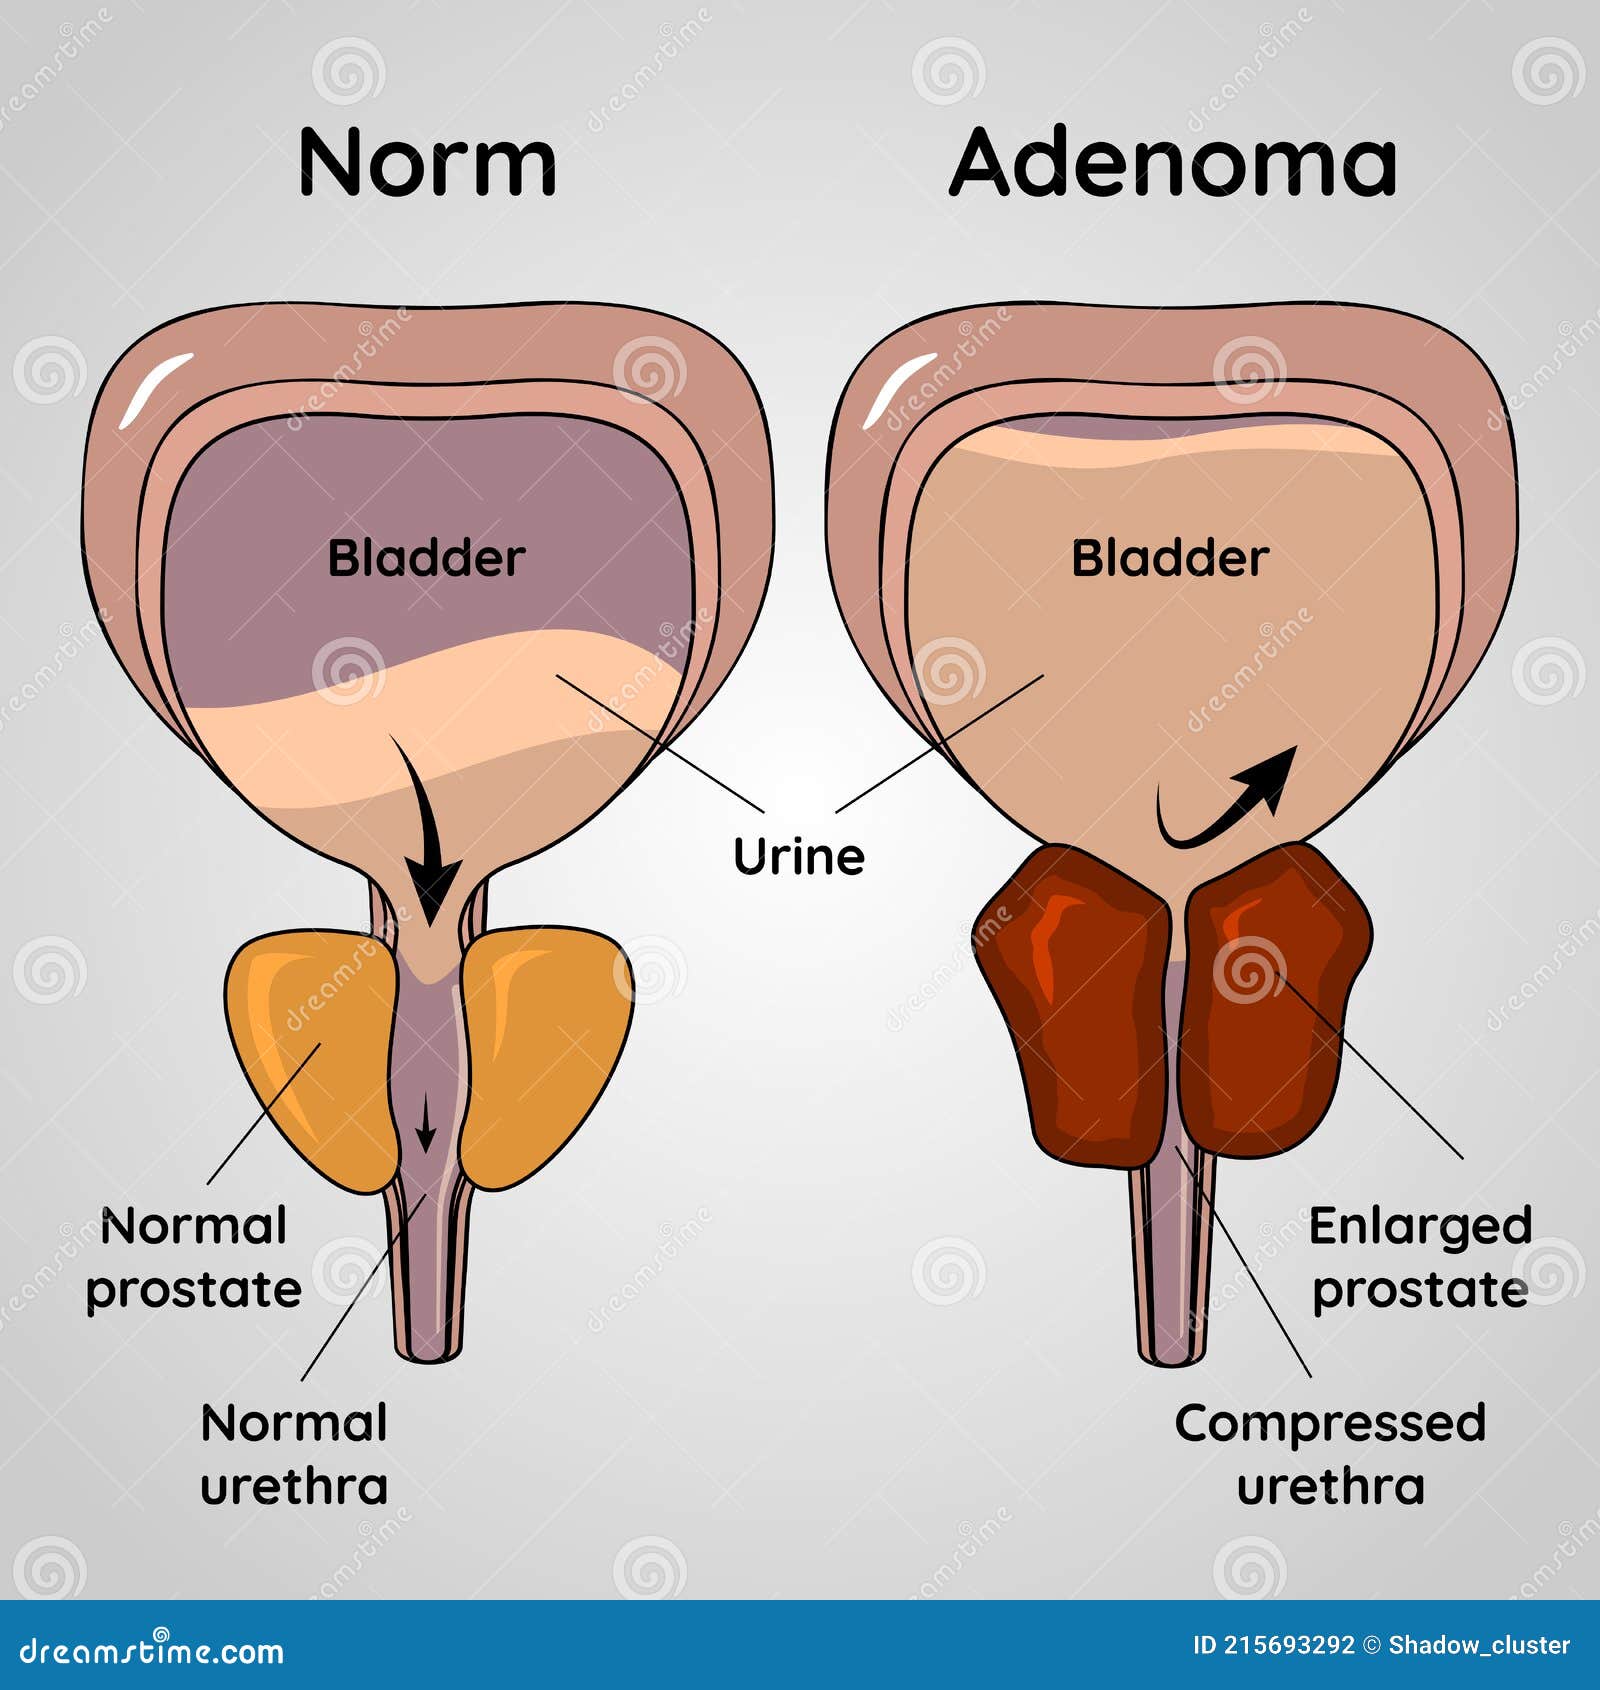 prostate adenoma diagnosis